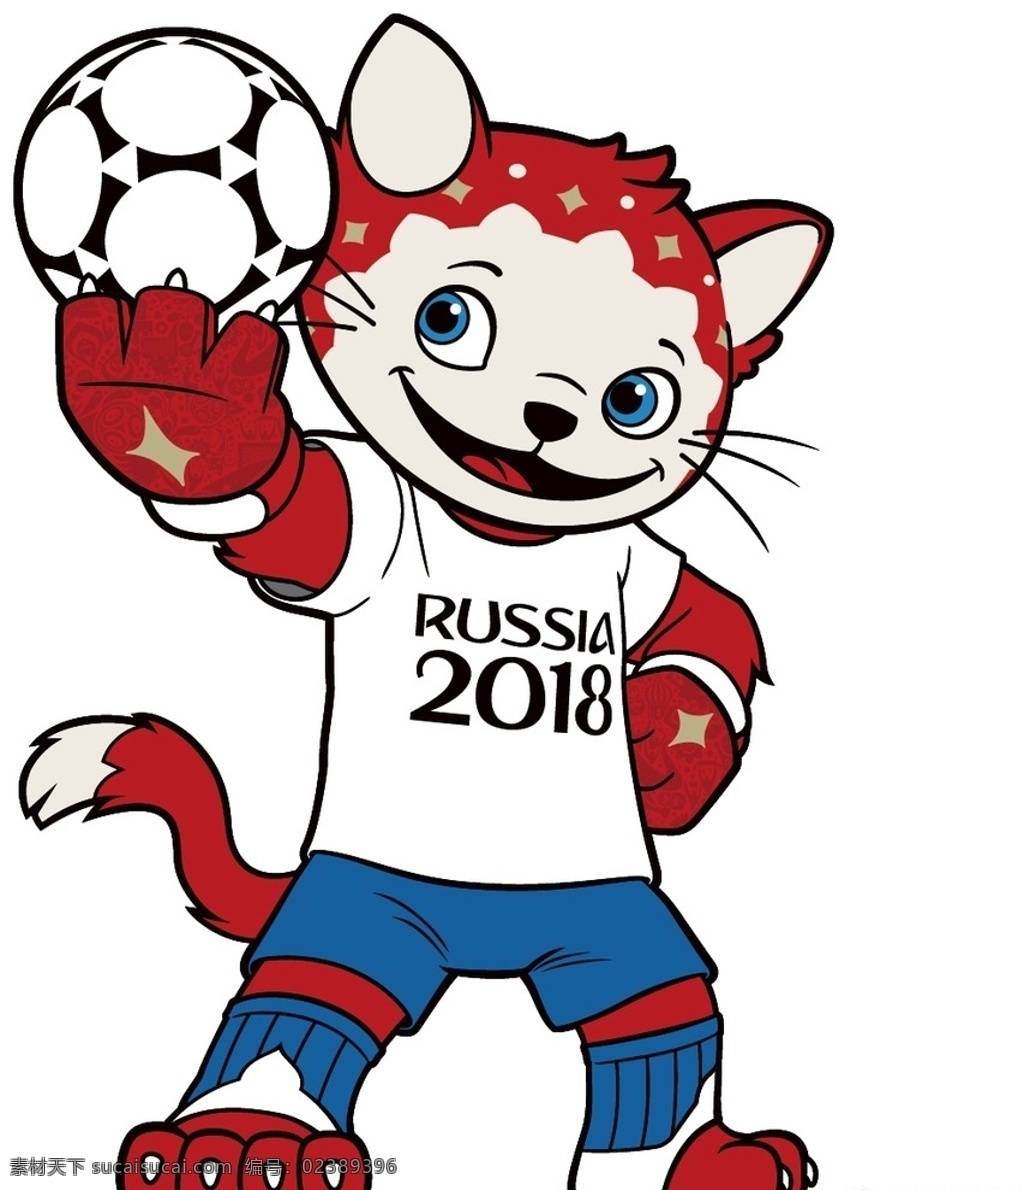 俄罗斯 世界杯 吉祥物 狼 虎 狐狸 足球 卡通 fifa 插画 动漫动画 动漫人物